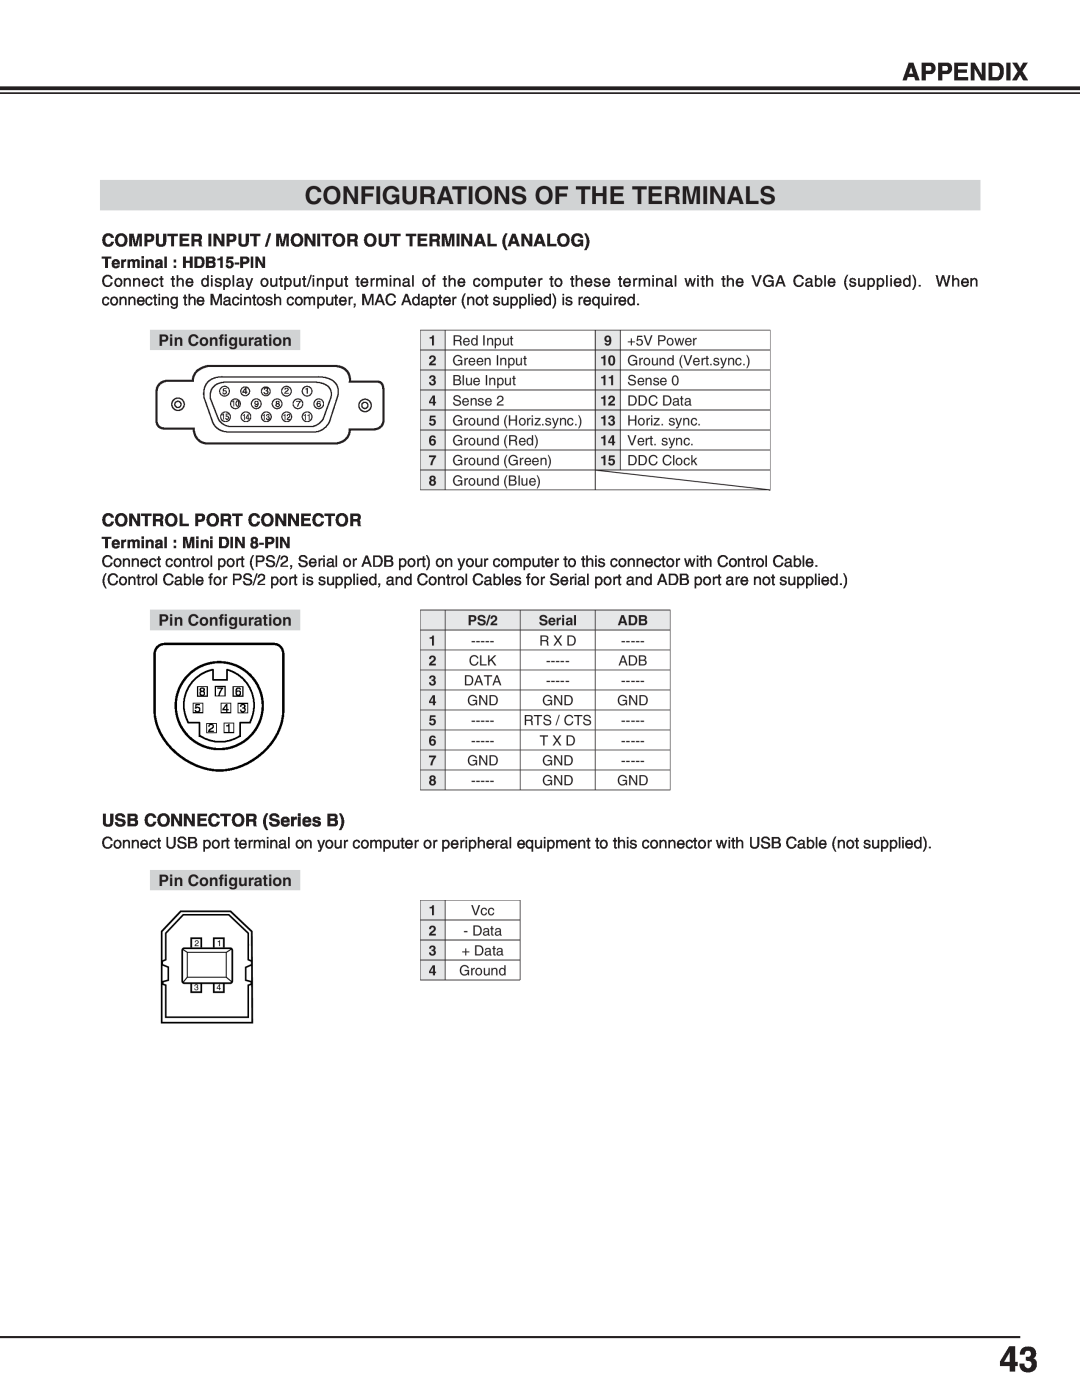 BOXLIGHT cp-305t Appendix Configurations Of The Terminals, Terminal HDB15-PIN, Pin Configuration, Terminal Mini DIN 8-PIN 